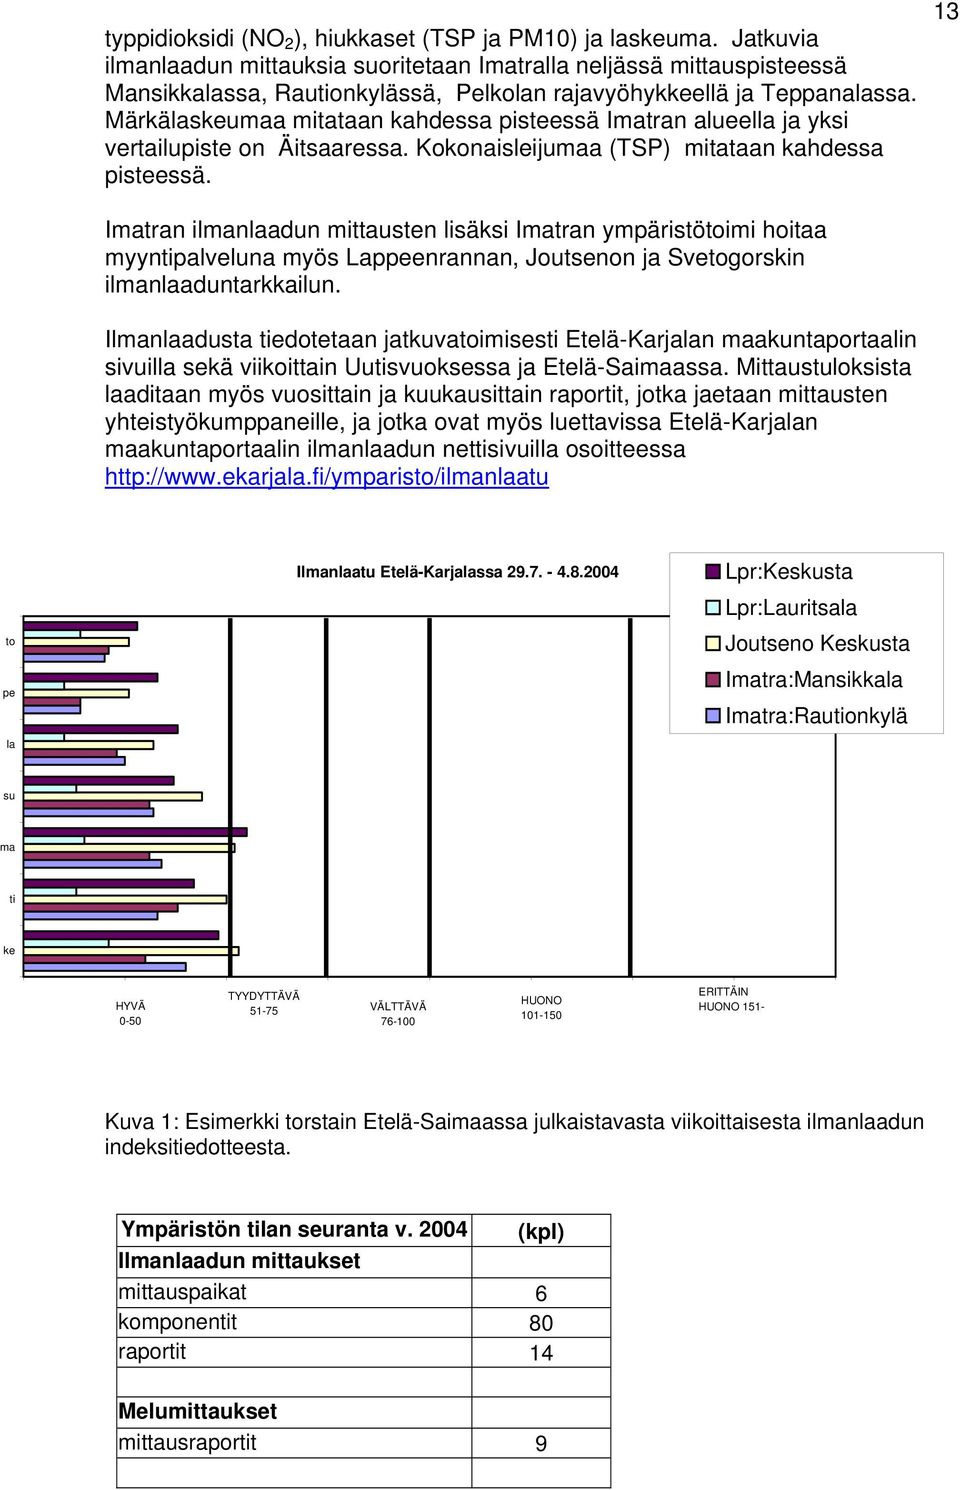 Märkälaskeumaa mitataan kahdessa pisteessä Imatran alueella ja yksi vertailupiste on Äitsaaressa. Kokonaisleijumaa (TSP) mitataan kahdessa pisteessä.